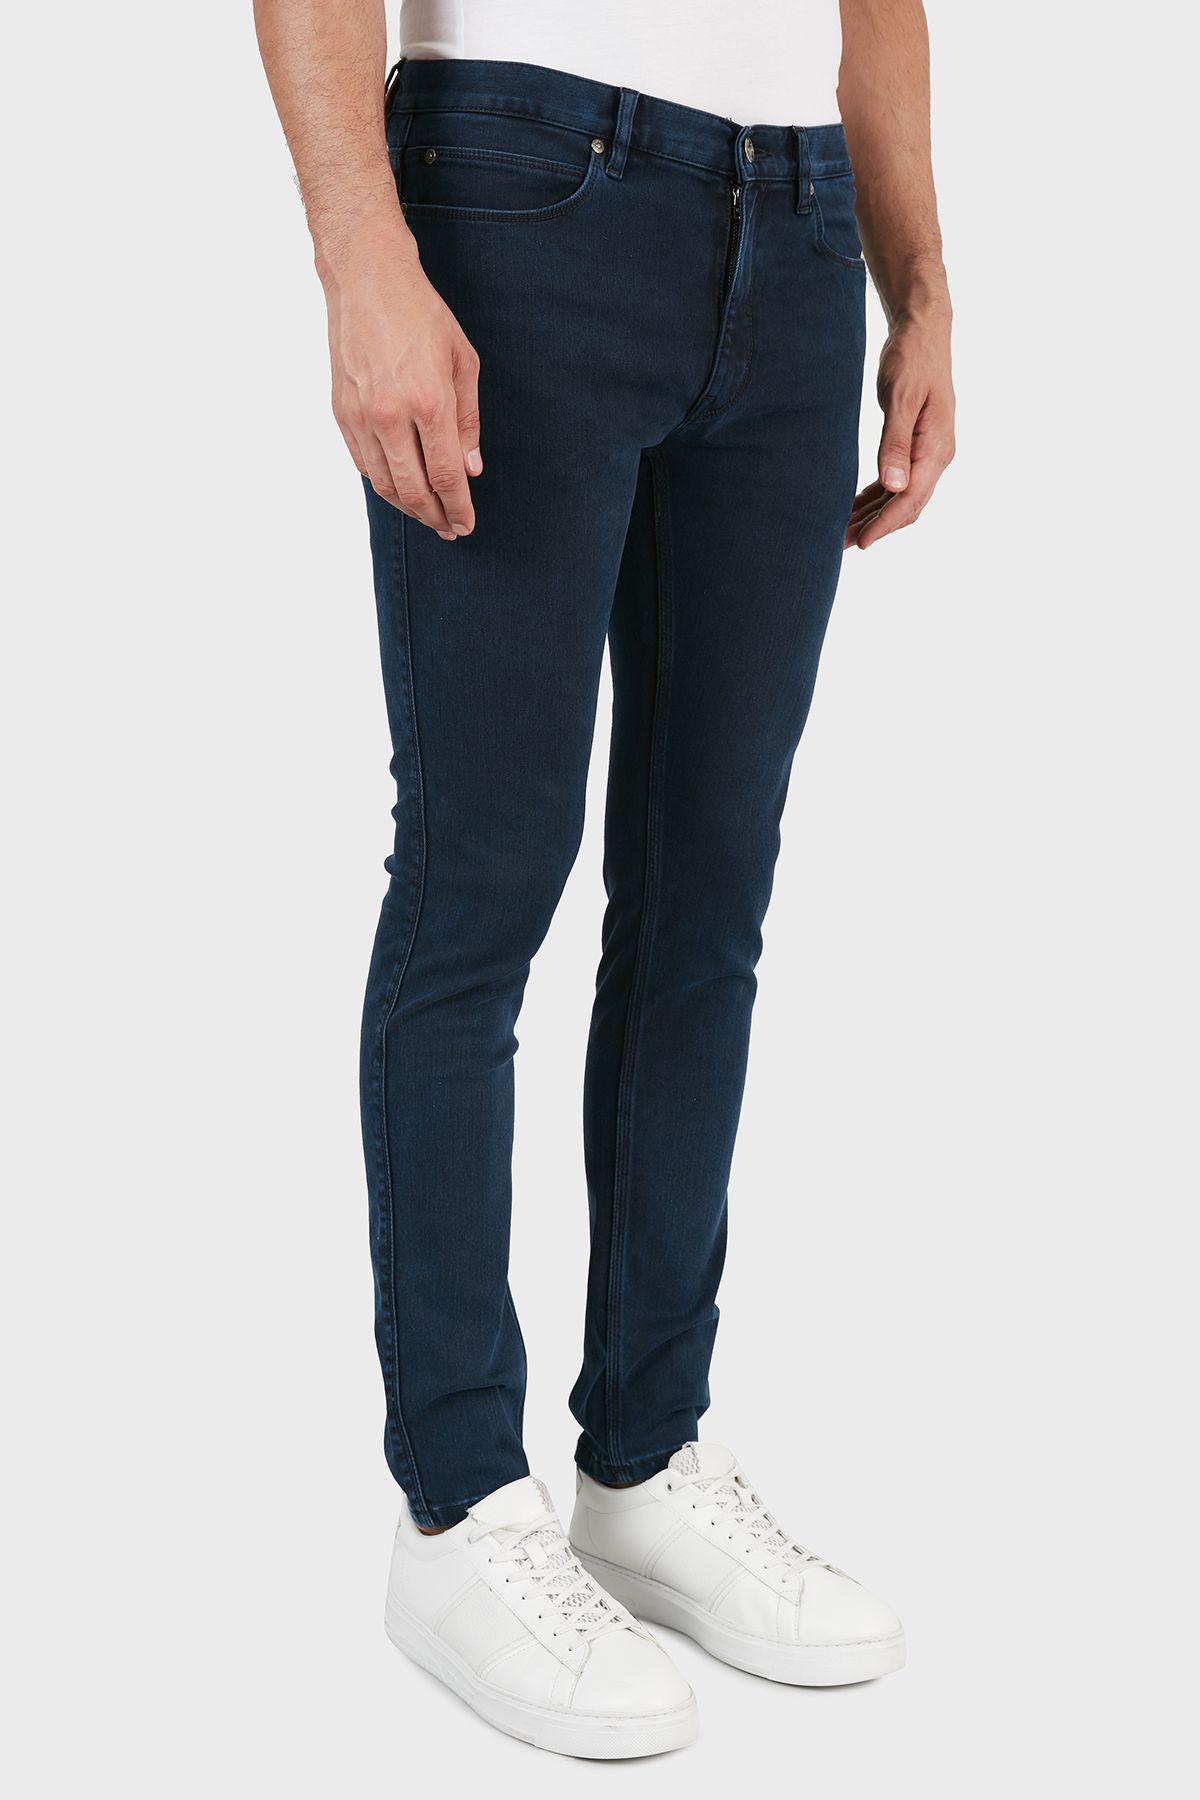 Hugo Boss Slim Fit Cepli Pamuklu Jeans Erkek Kot Pantolon 50459799 410 LACİVERT